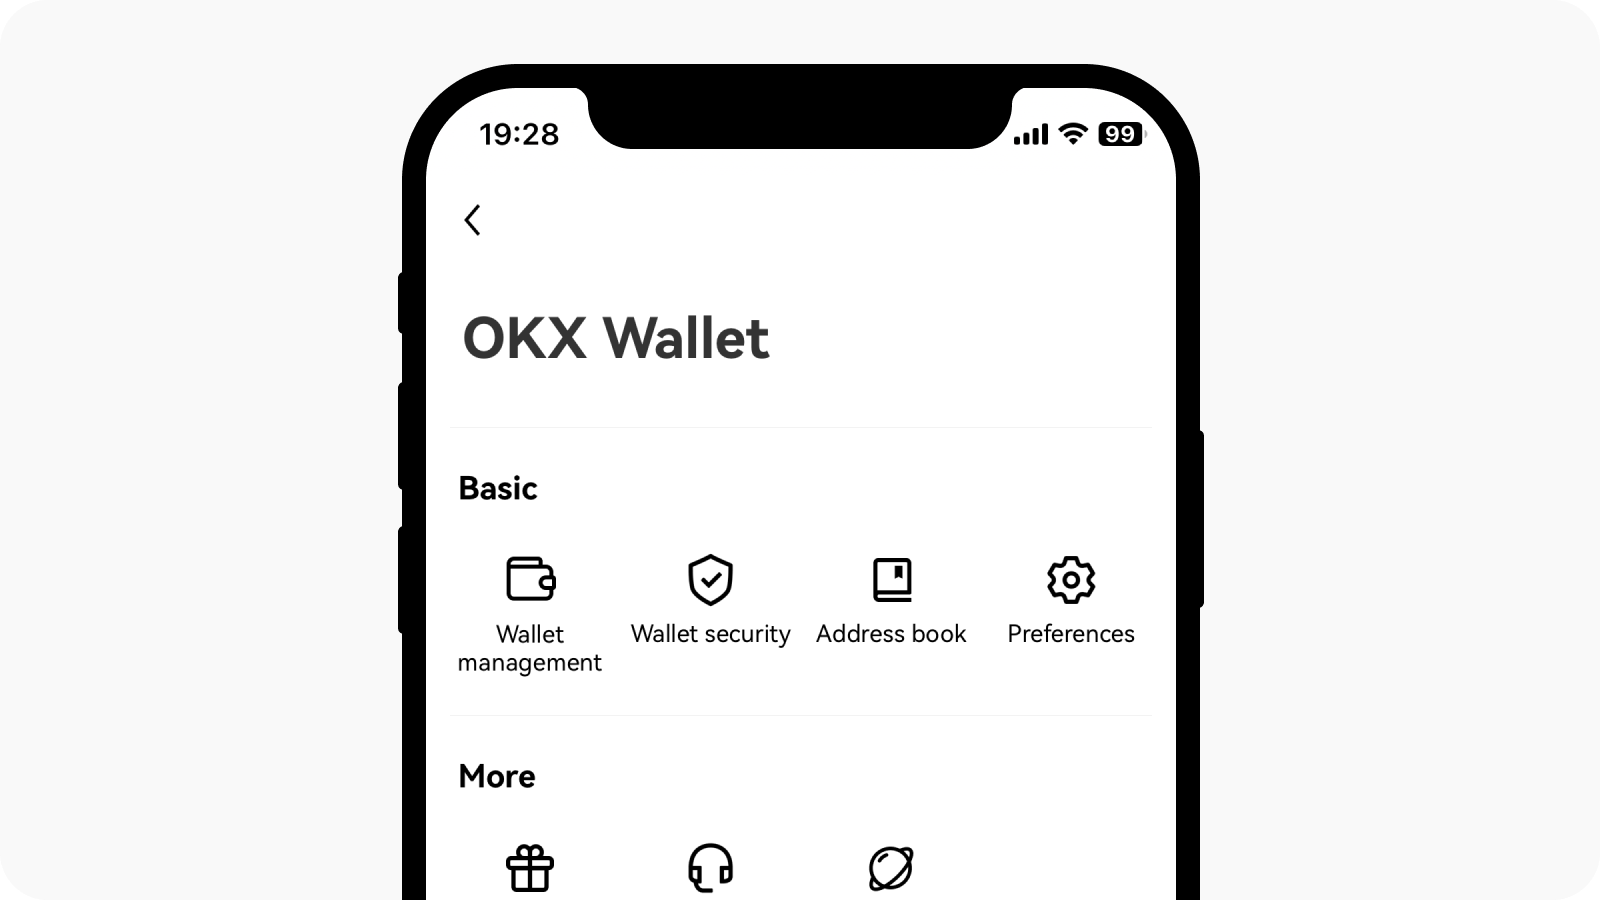 Selecteer Gebruikerscentrum in de linkerbovenhoek en ga naar Walletbeheer onder OKX-wallet